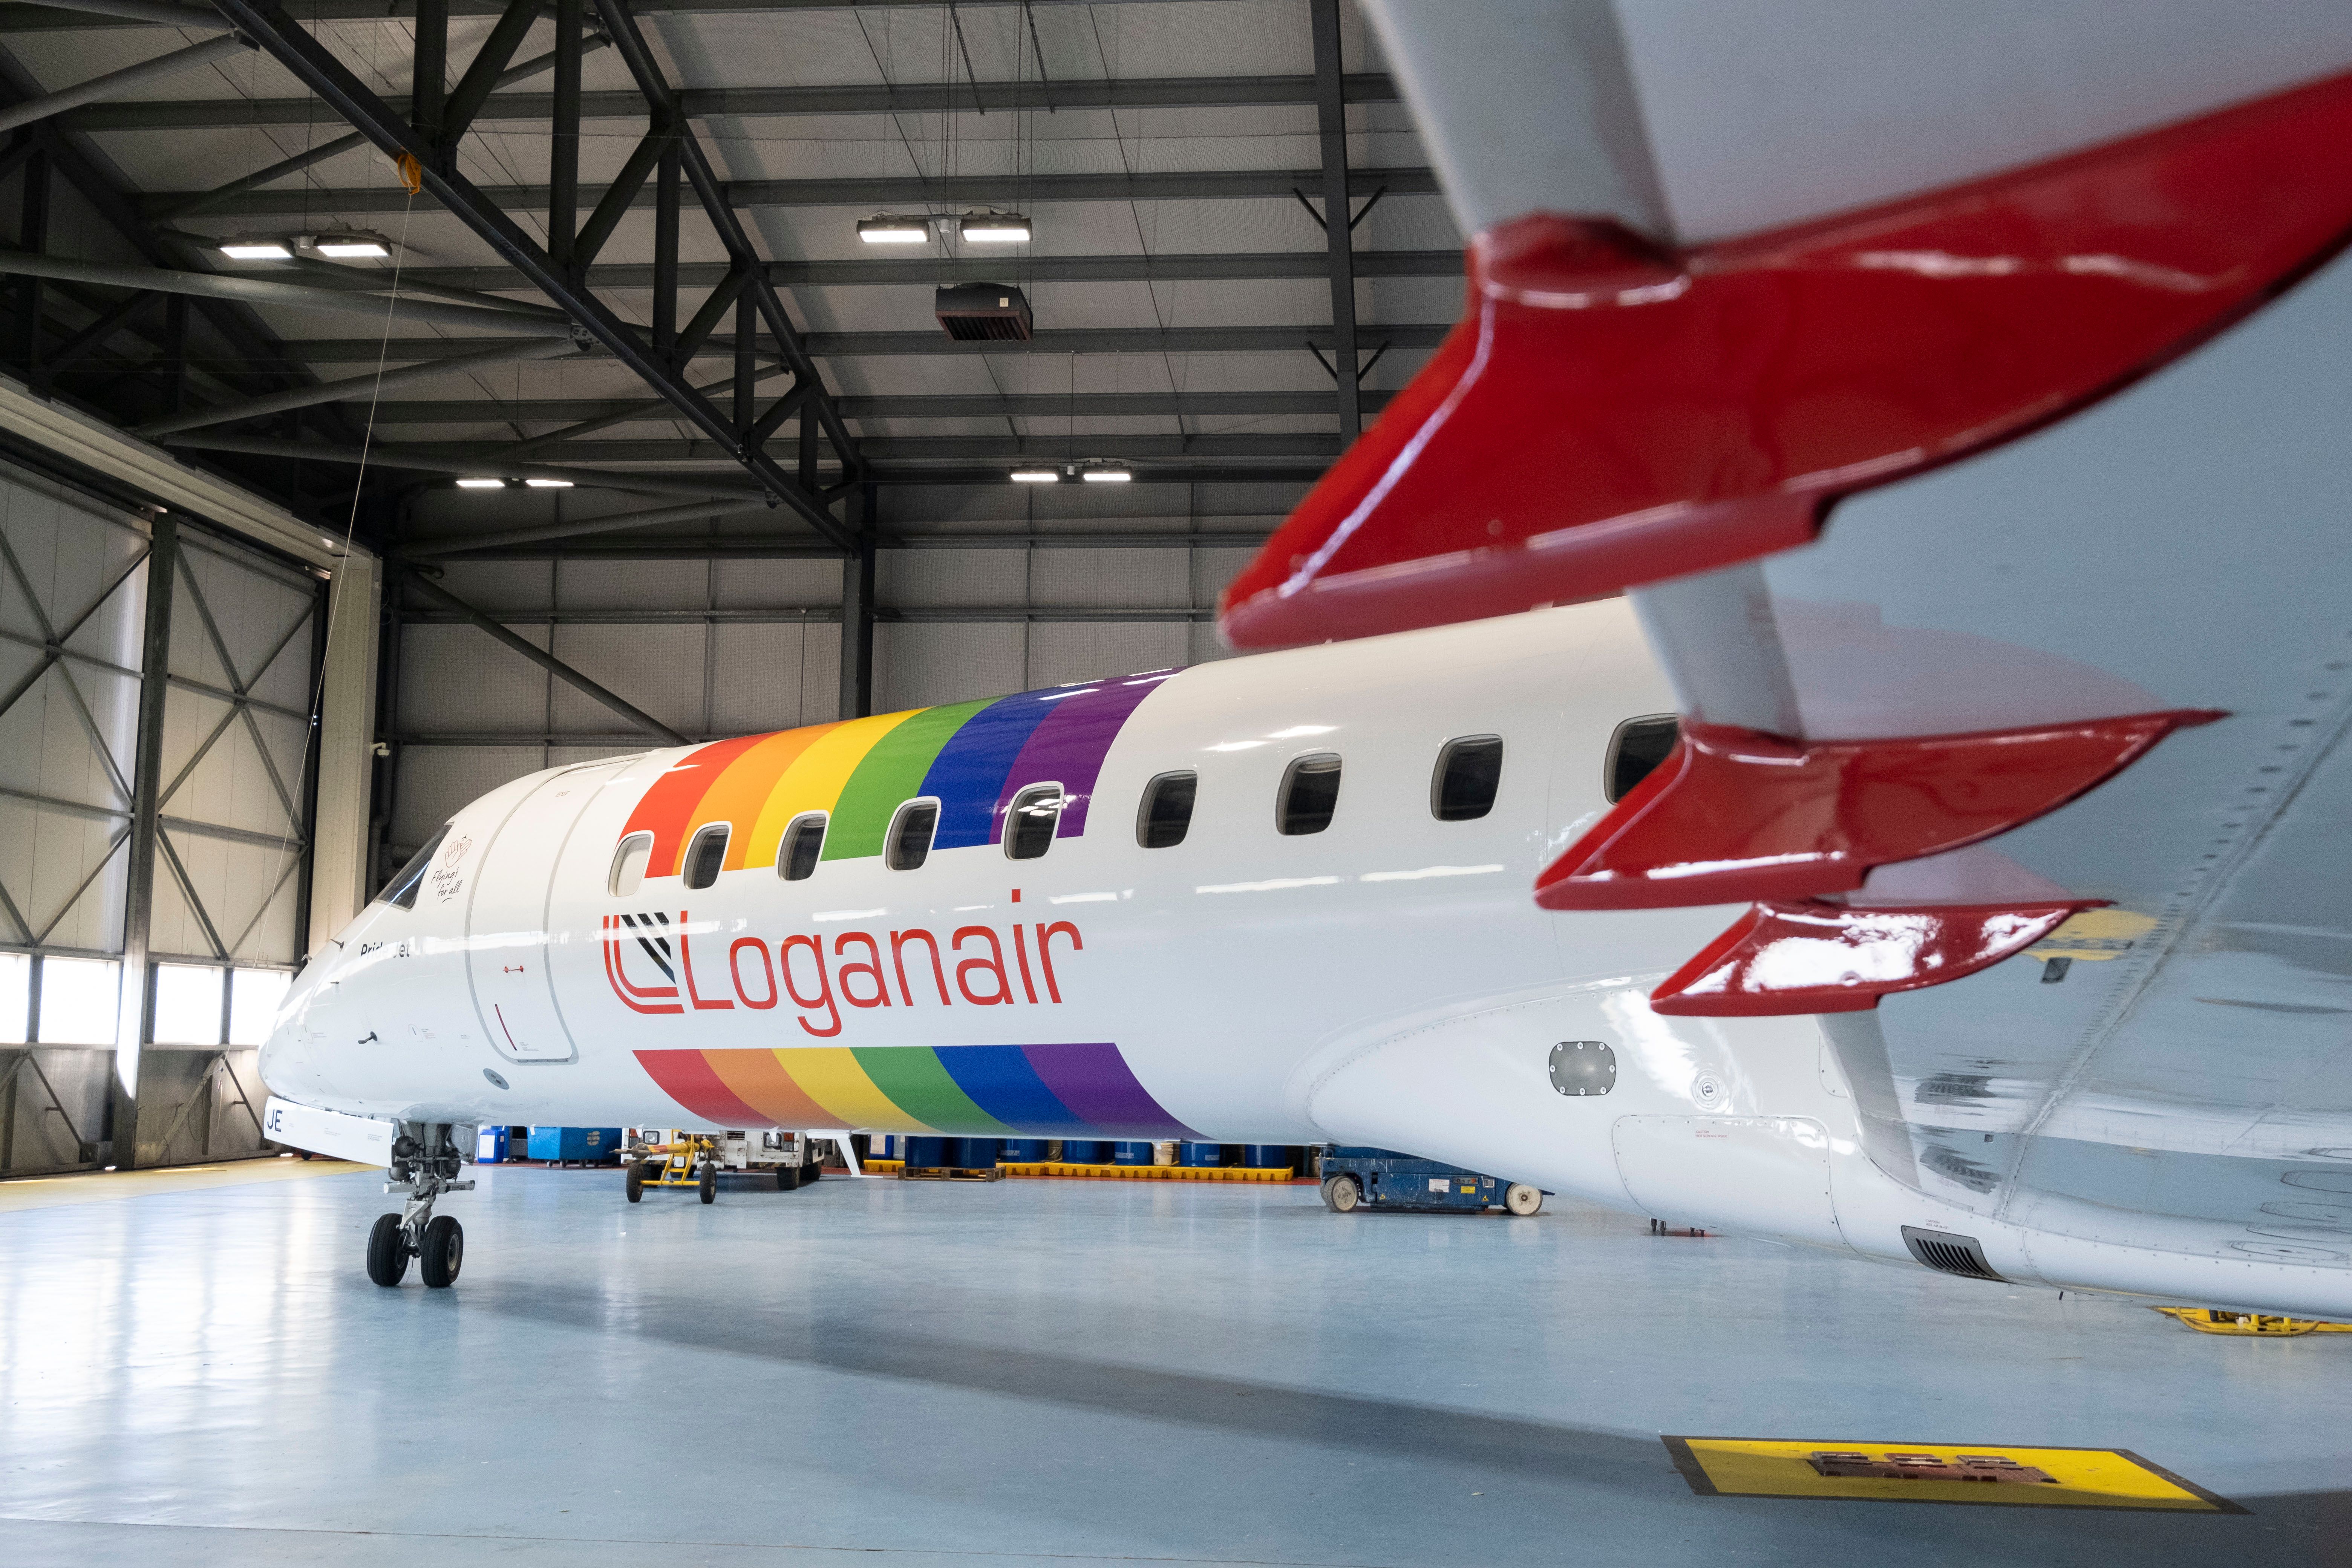 Loganair Pride's Embraer 145